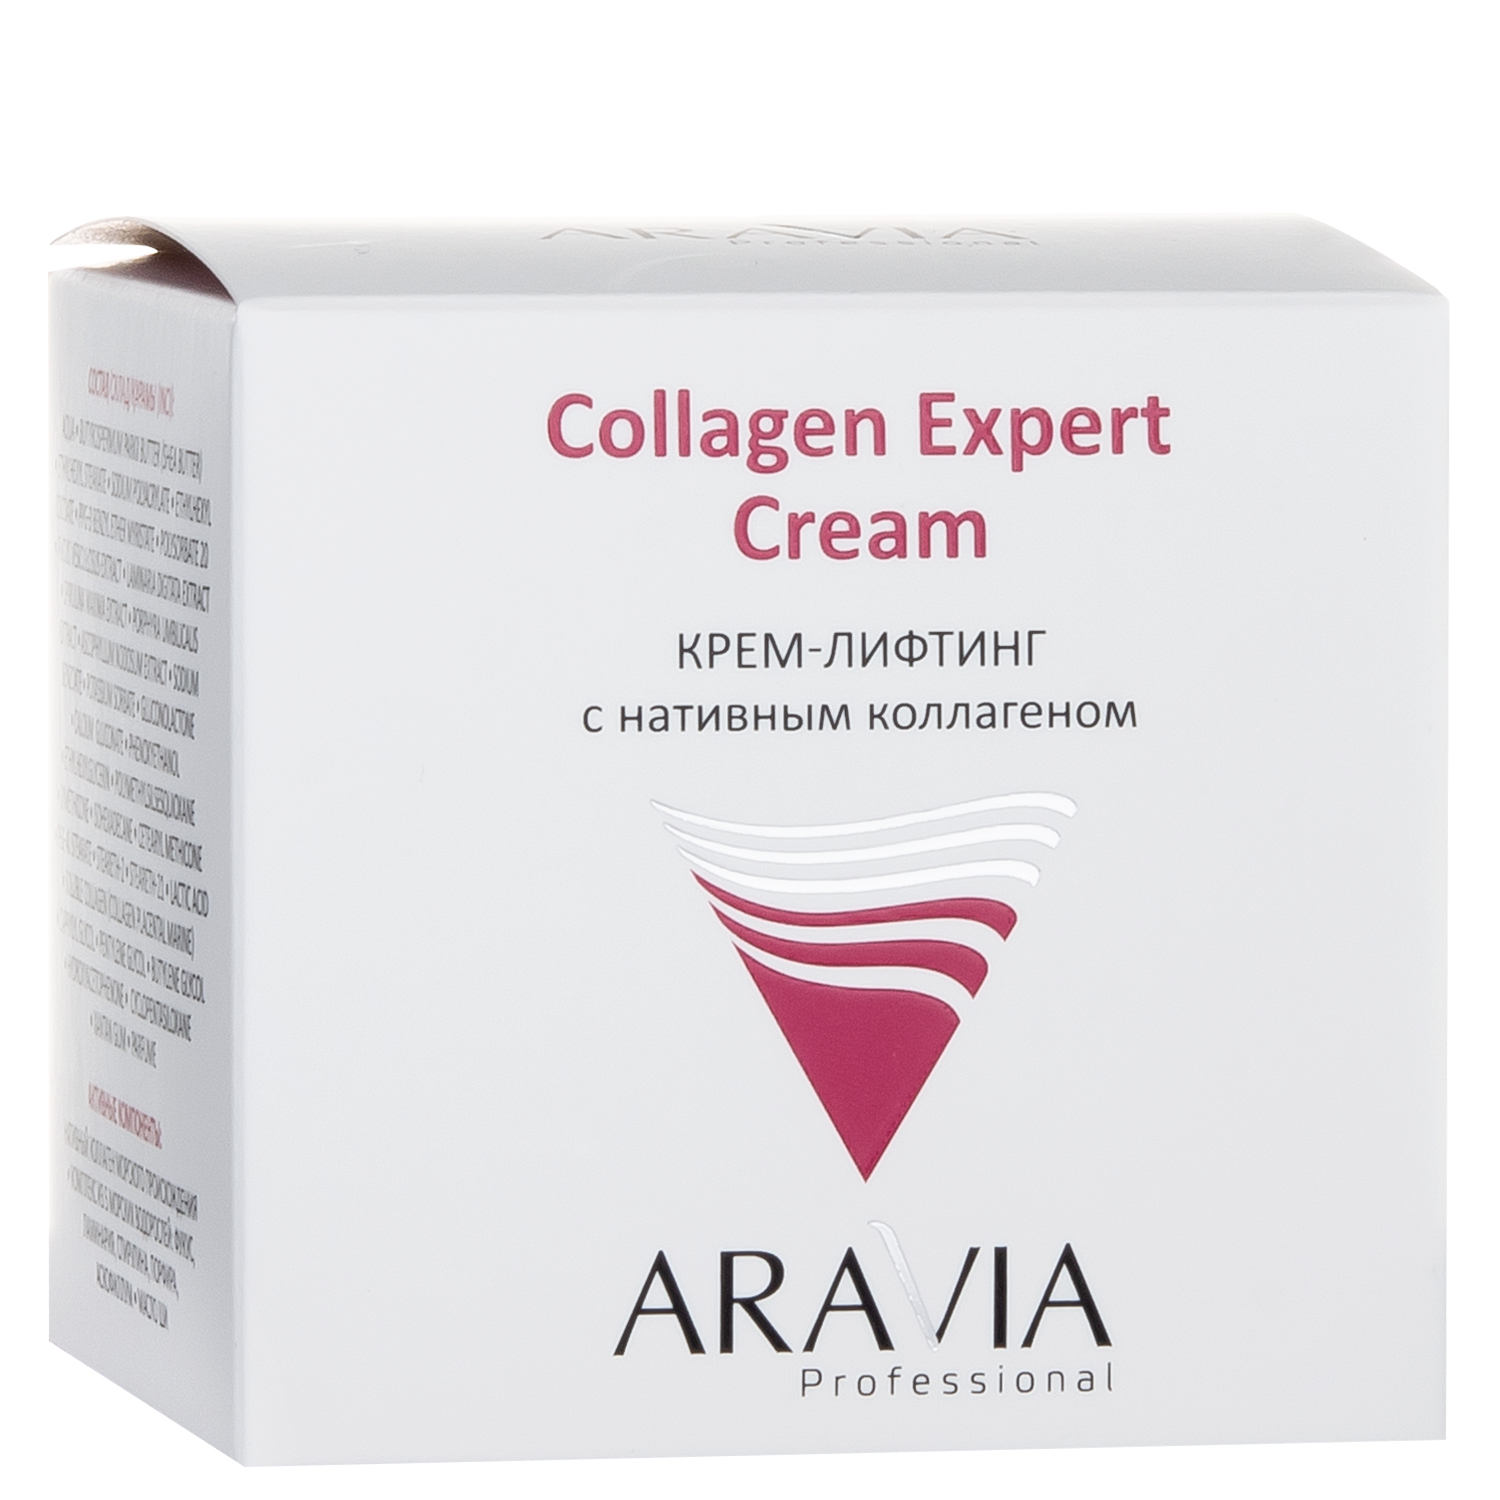 Крем-лифтинг с нативным коллагеном Collagen Expert Cream, 50 мл, ARAVIA Professional